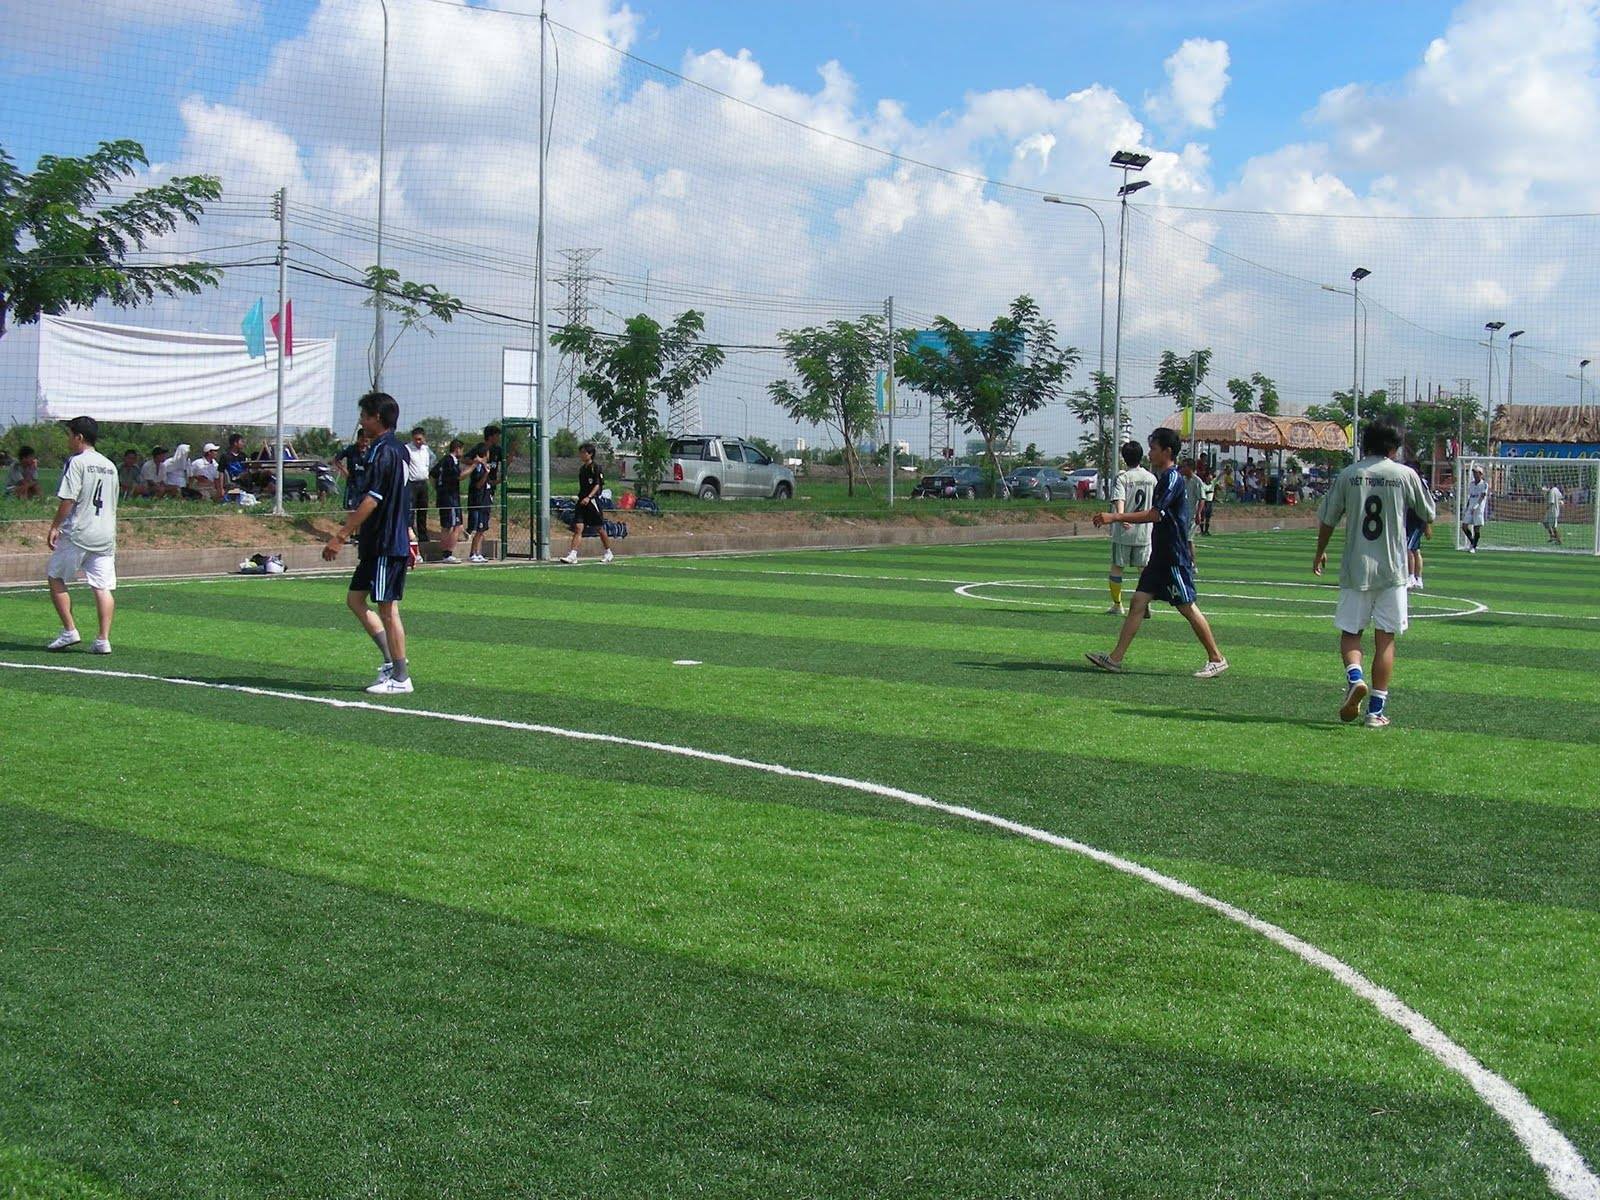 Sân bóng đá Bách Việt – Sân bóng chất lượng khu vực Cầu Giấy 2